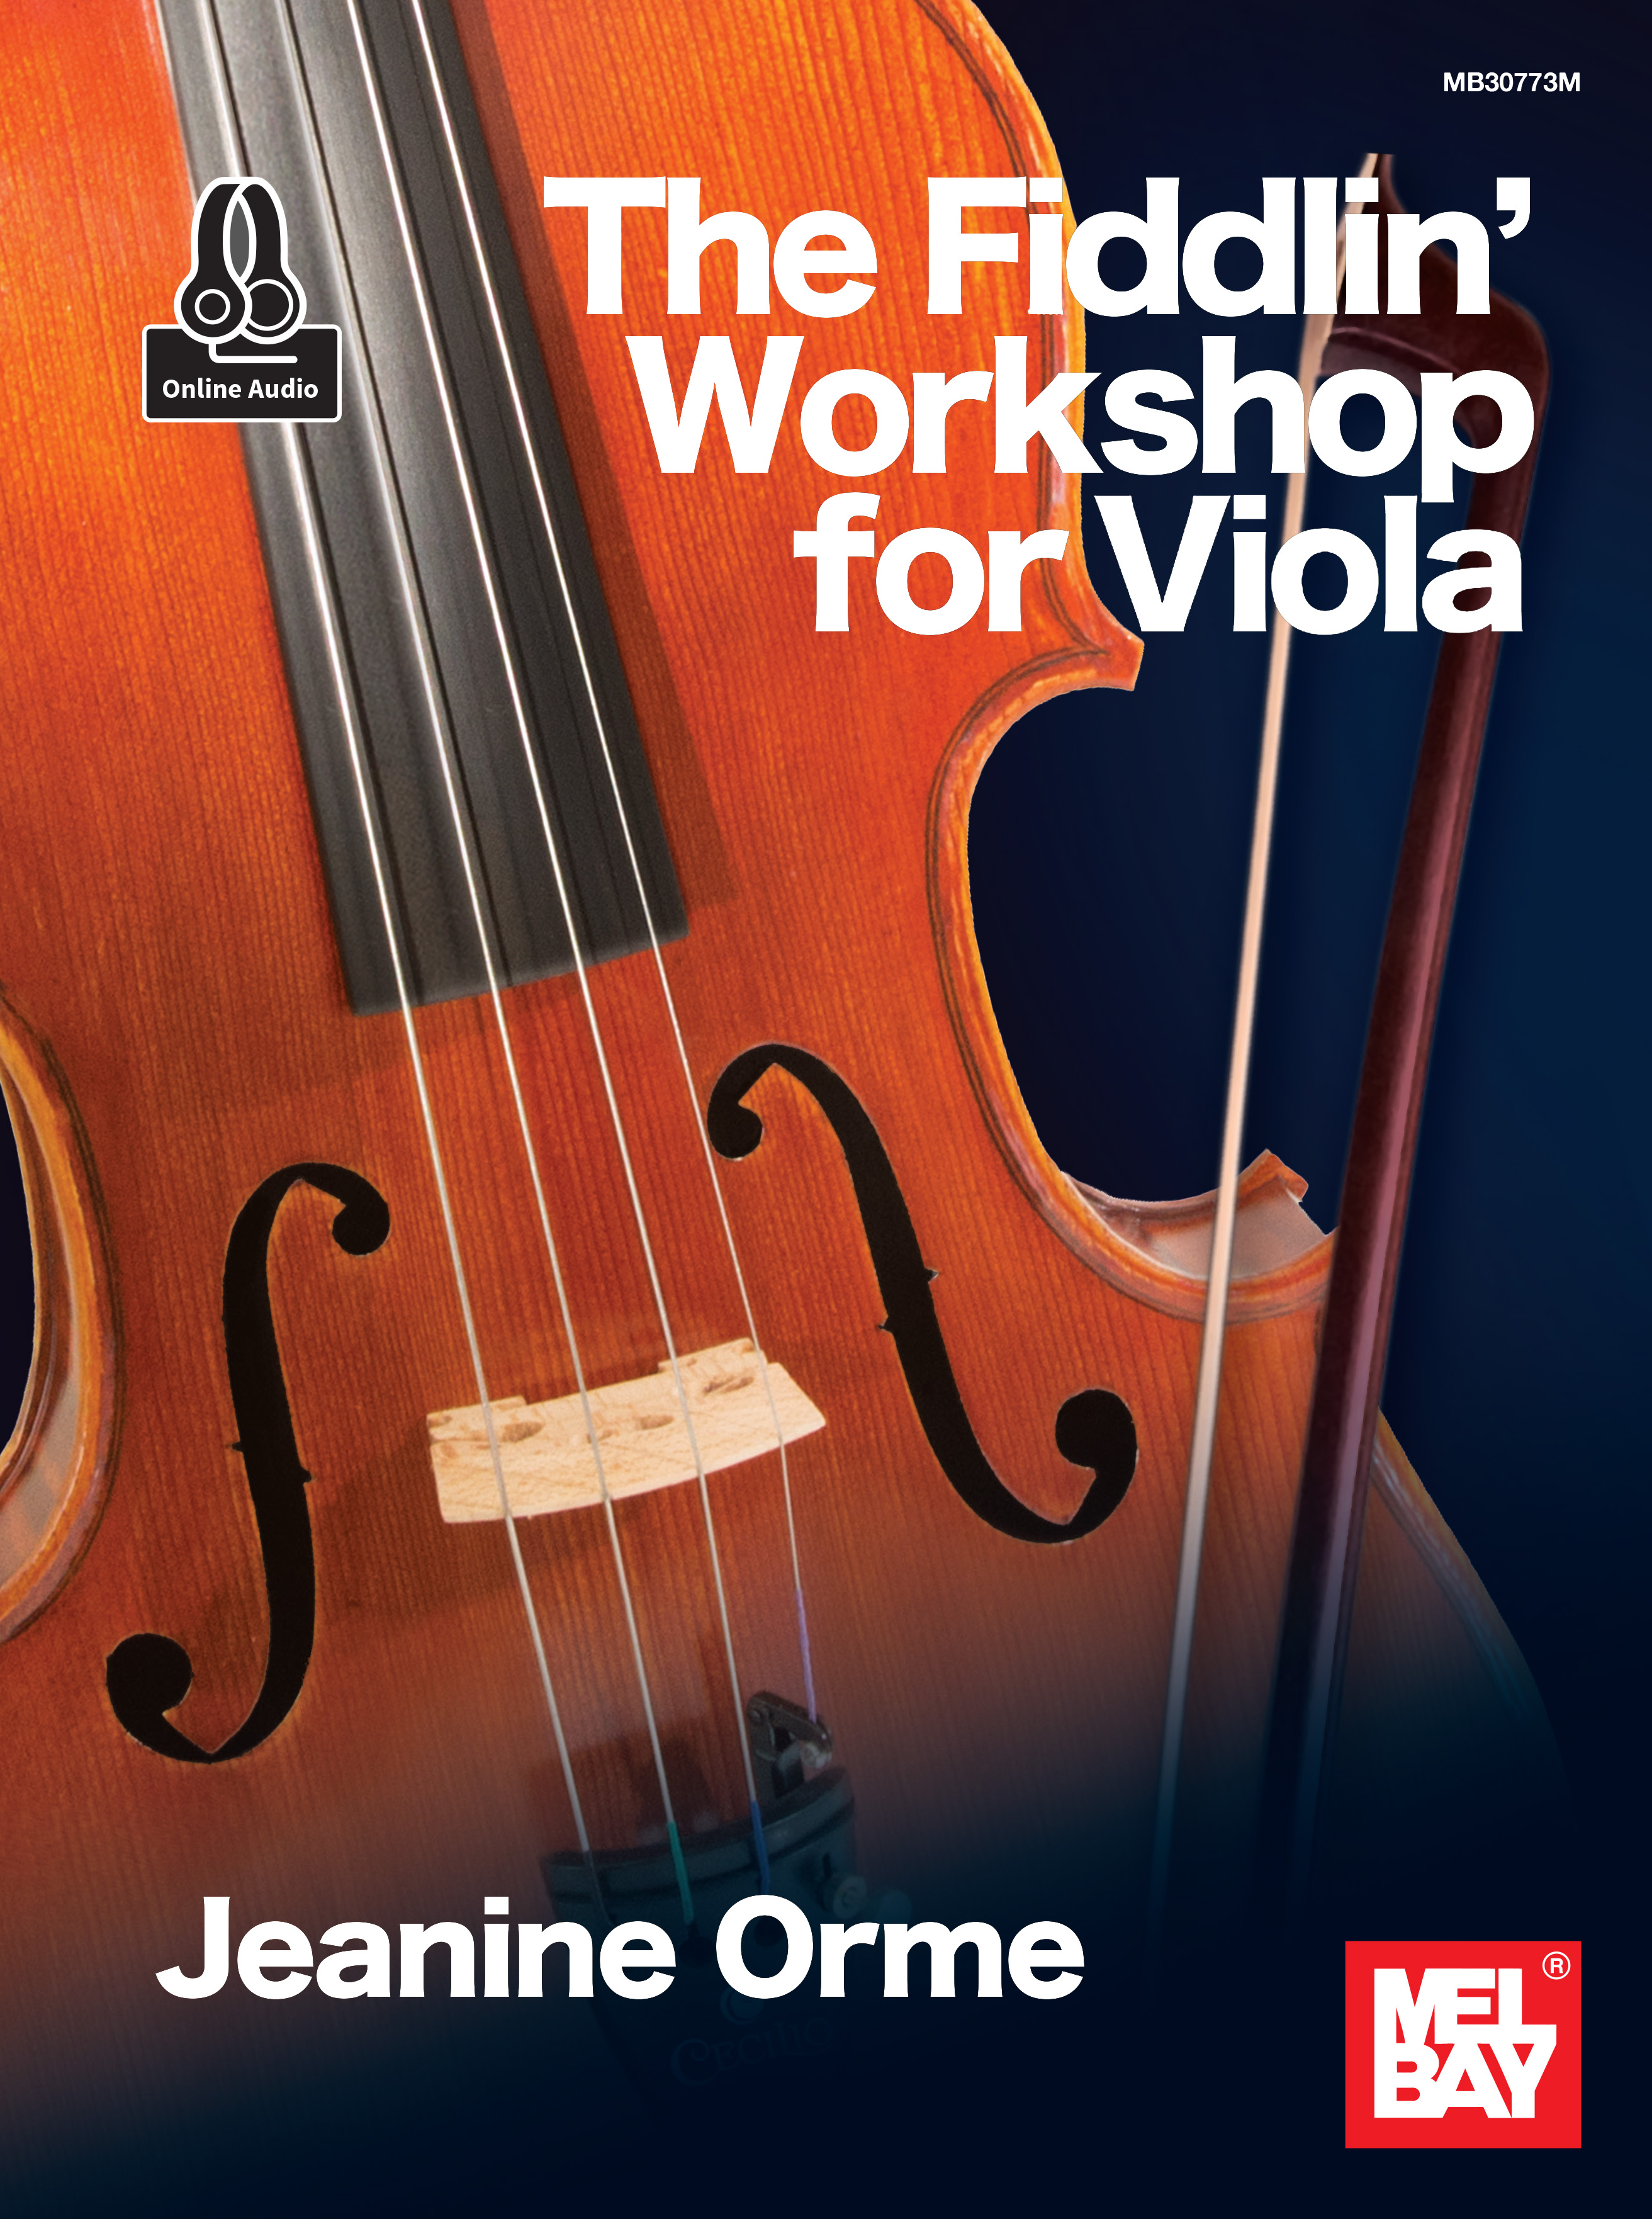 The Fiddlin' Workshop for Viola